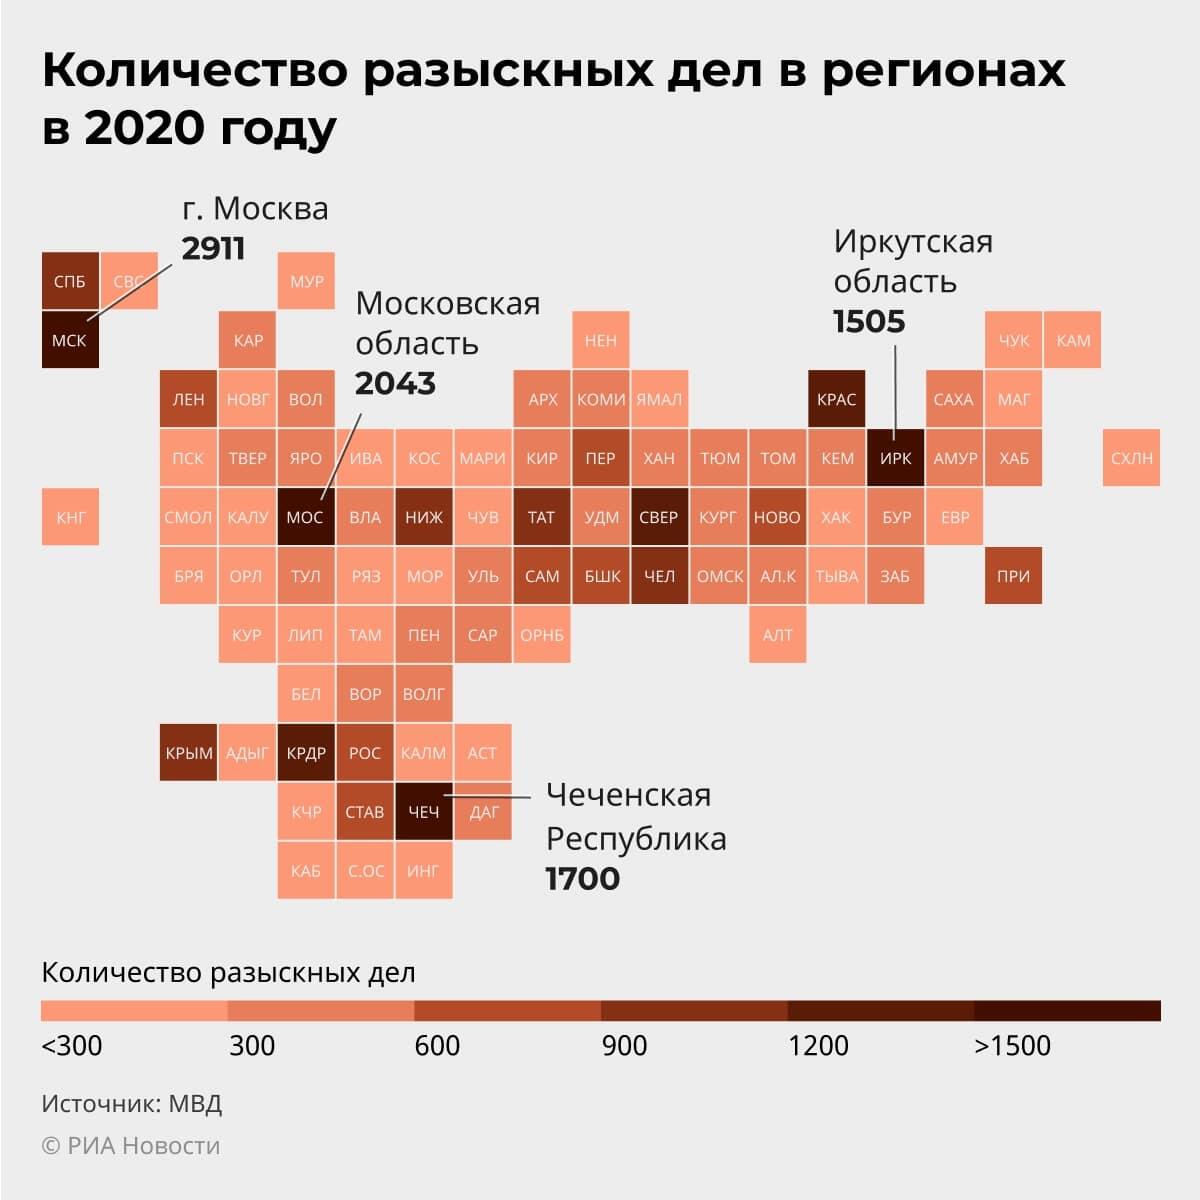 Количество разыскных дел в регионах 2020 году